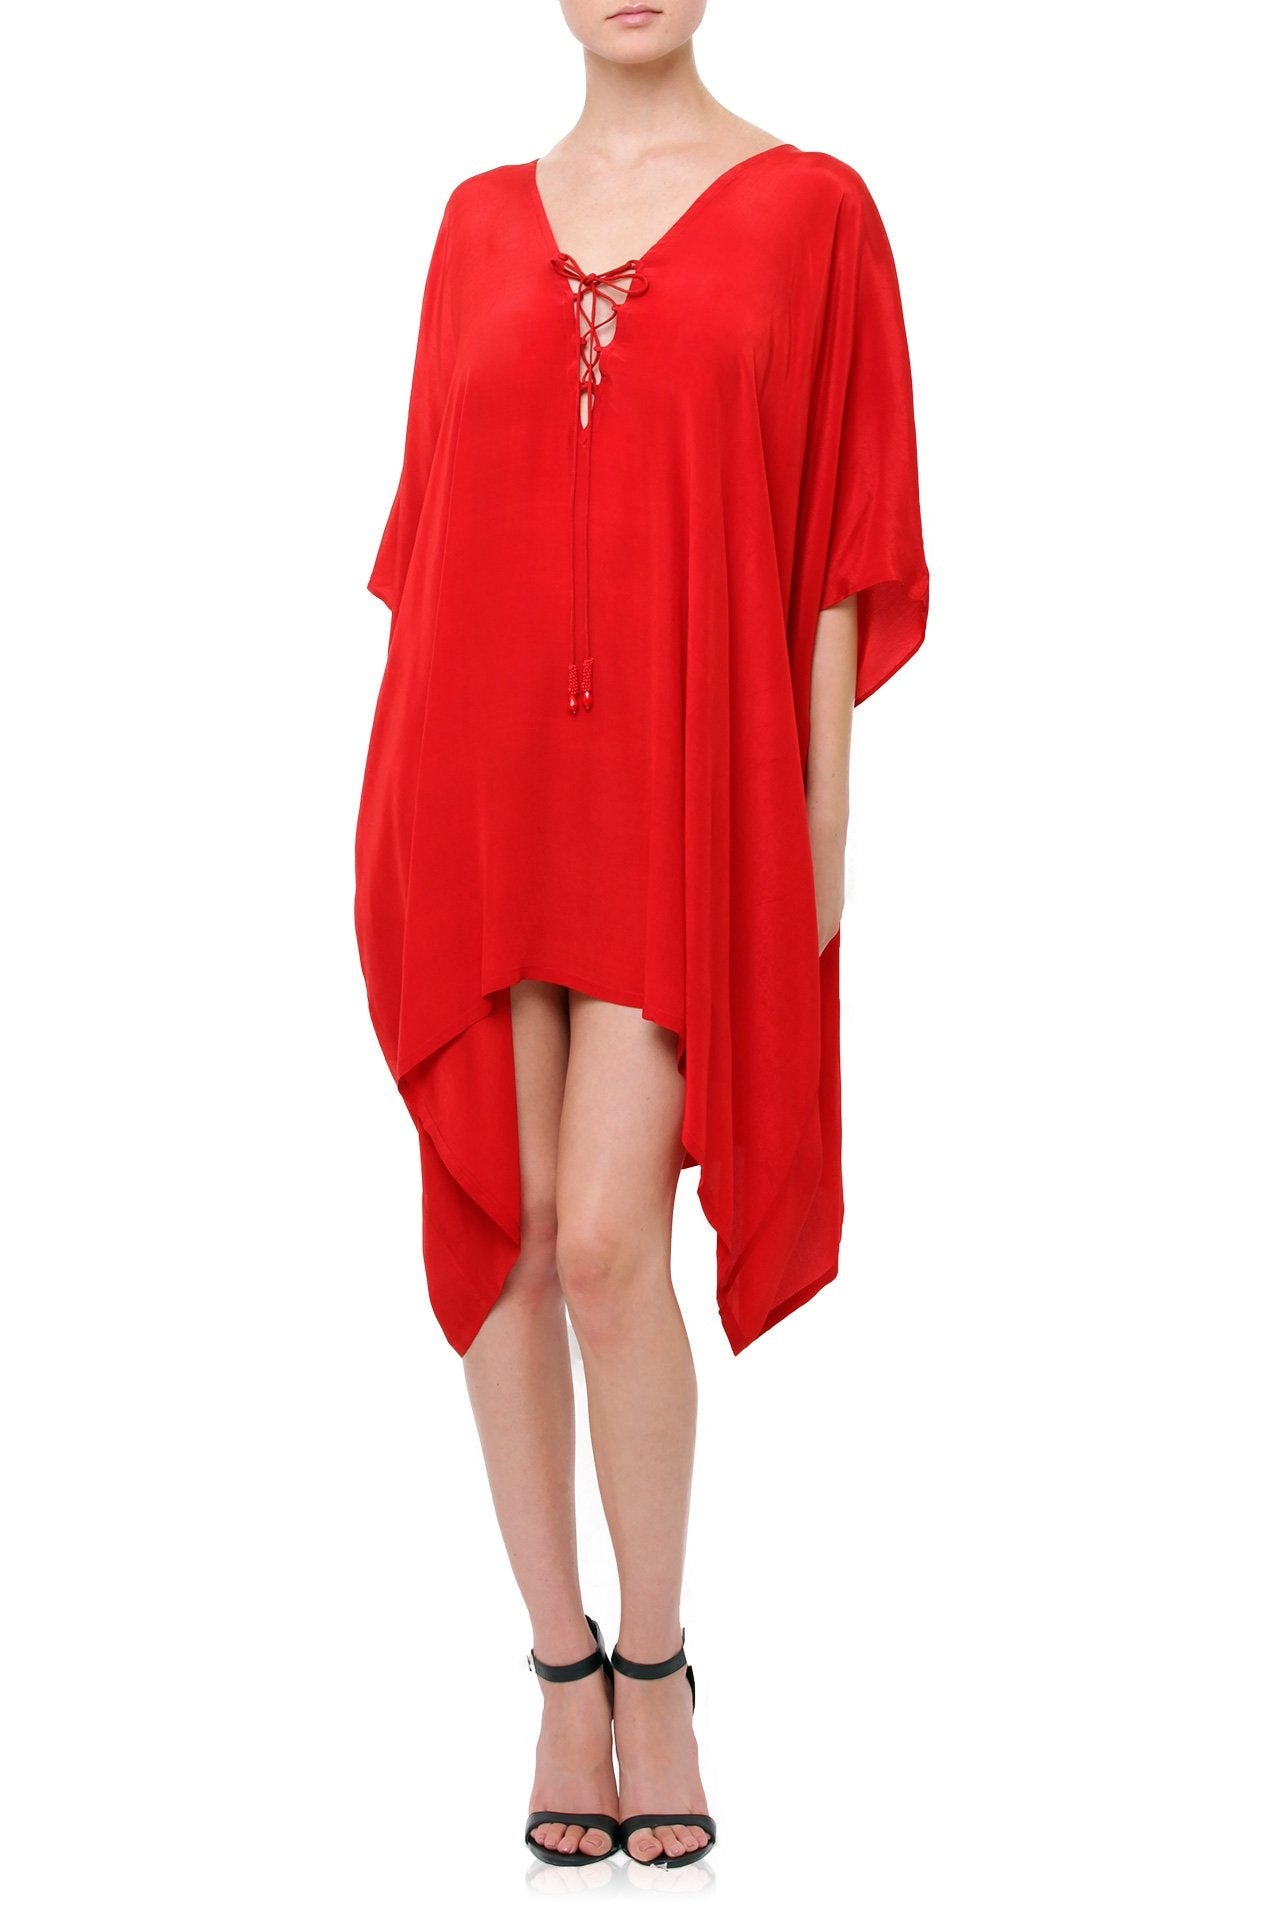 Multiwear Short Lace up Kaftan in Red